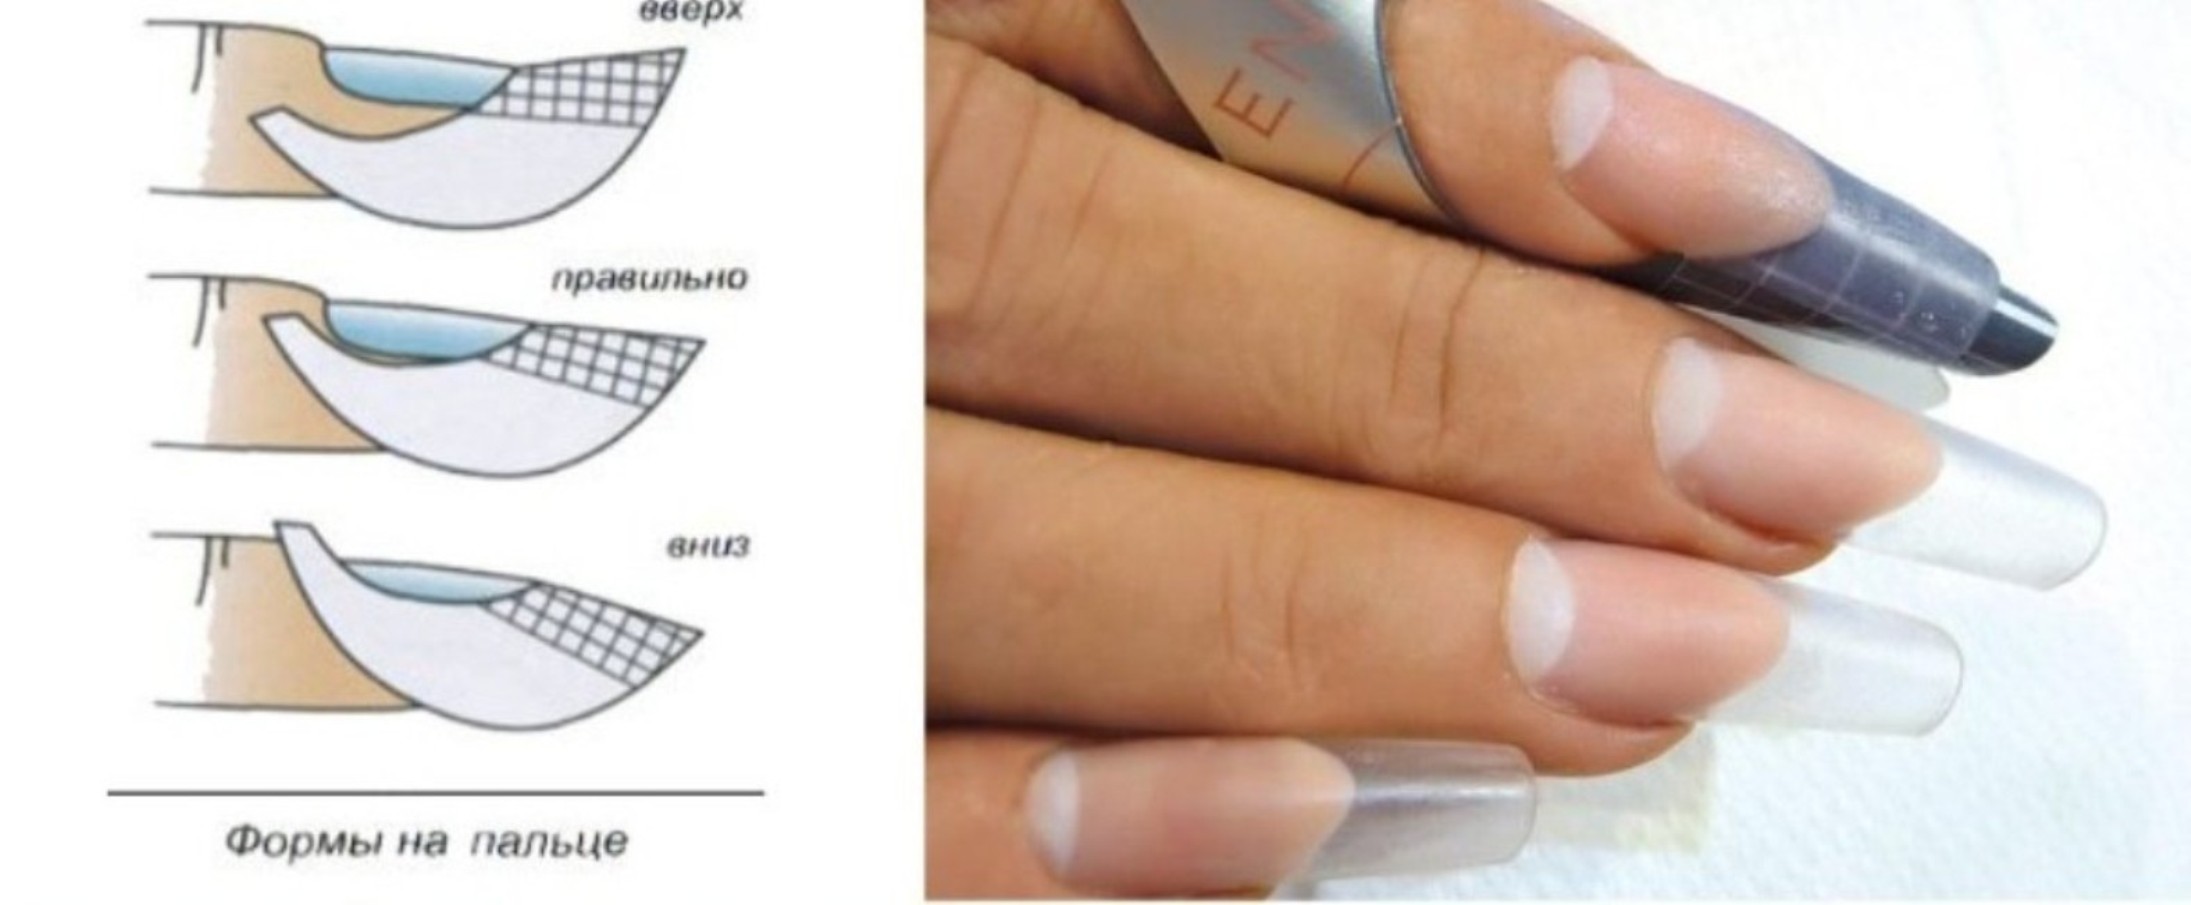 Правильная форма нарощенных ногтей вид сбоку